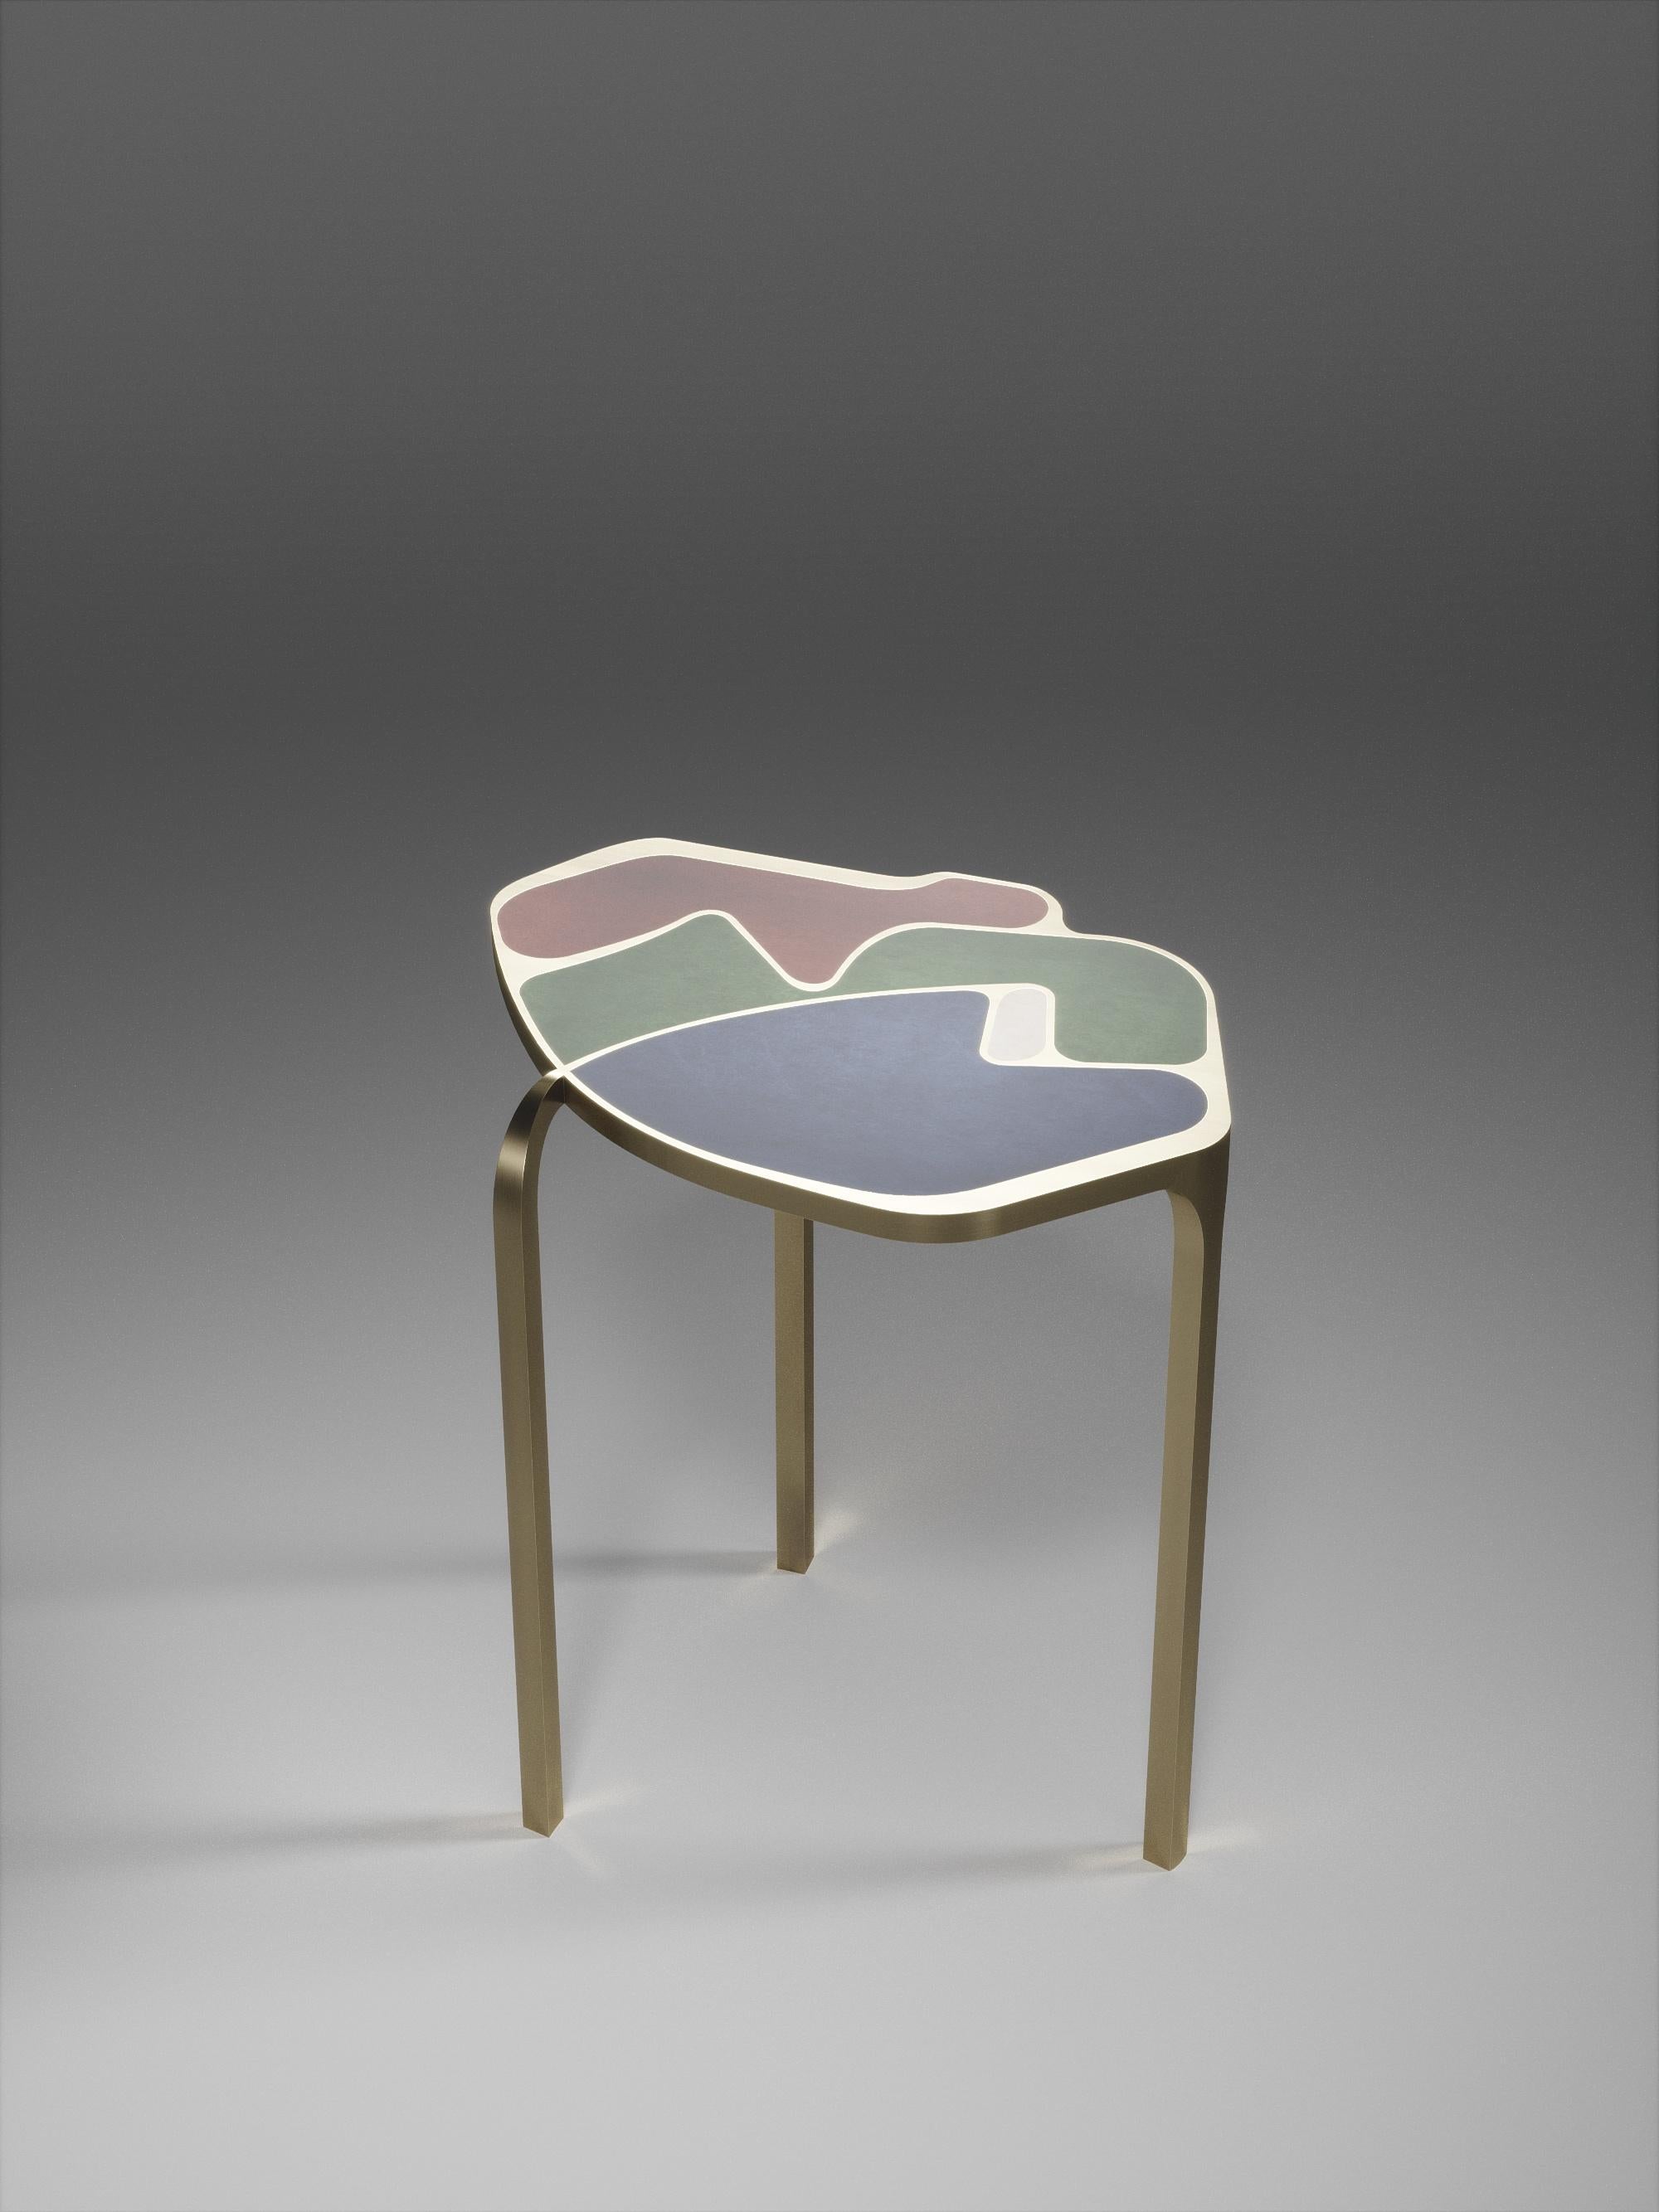 La table d'appoint Cocteau de R&Y Augousti est une pièce unique en son genre. Cette pièce sculpturale et éthérée comporte des formes abstraites et des figures que l'on peut interpréter de différentes manières. Les inserts en laiton bronze-patiné